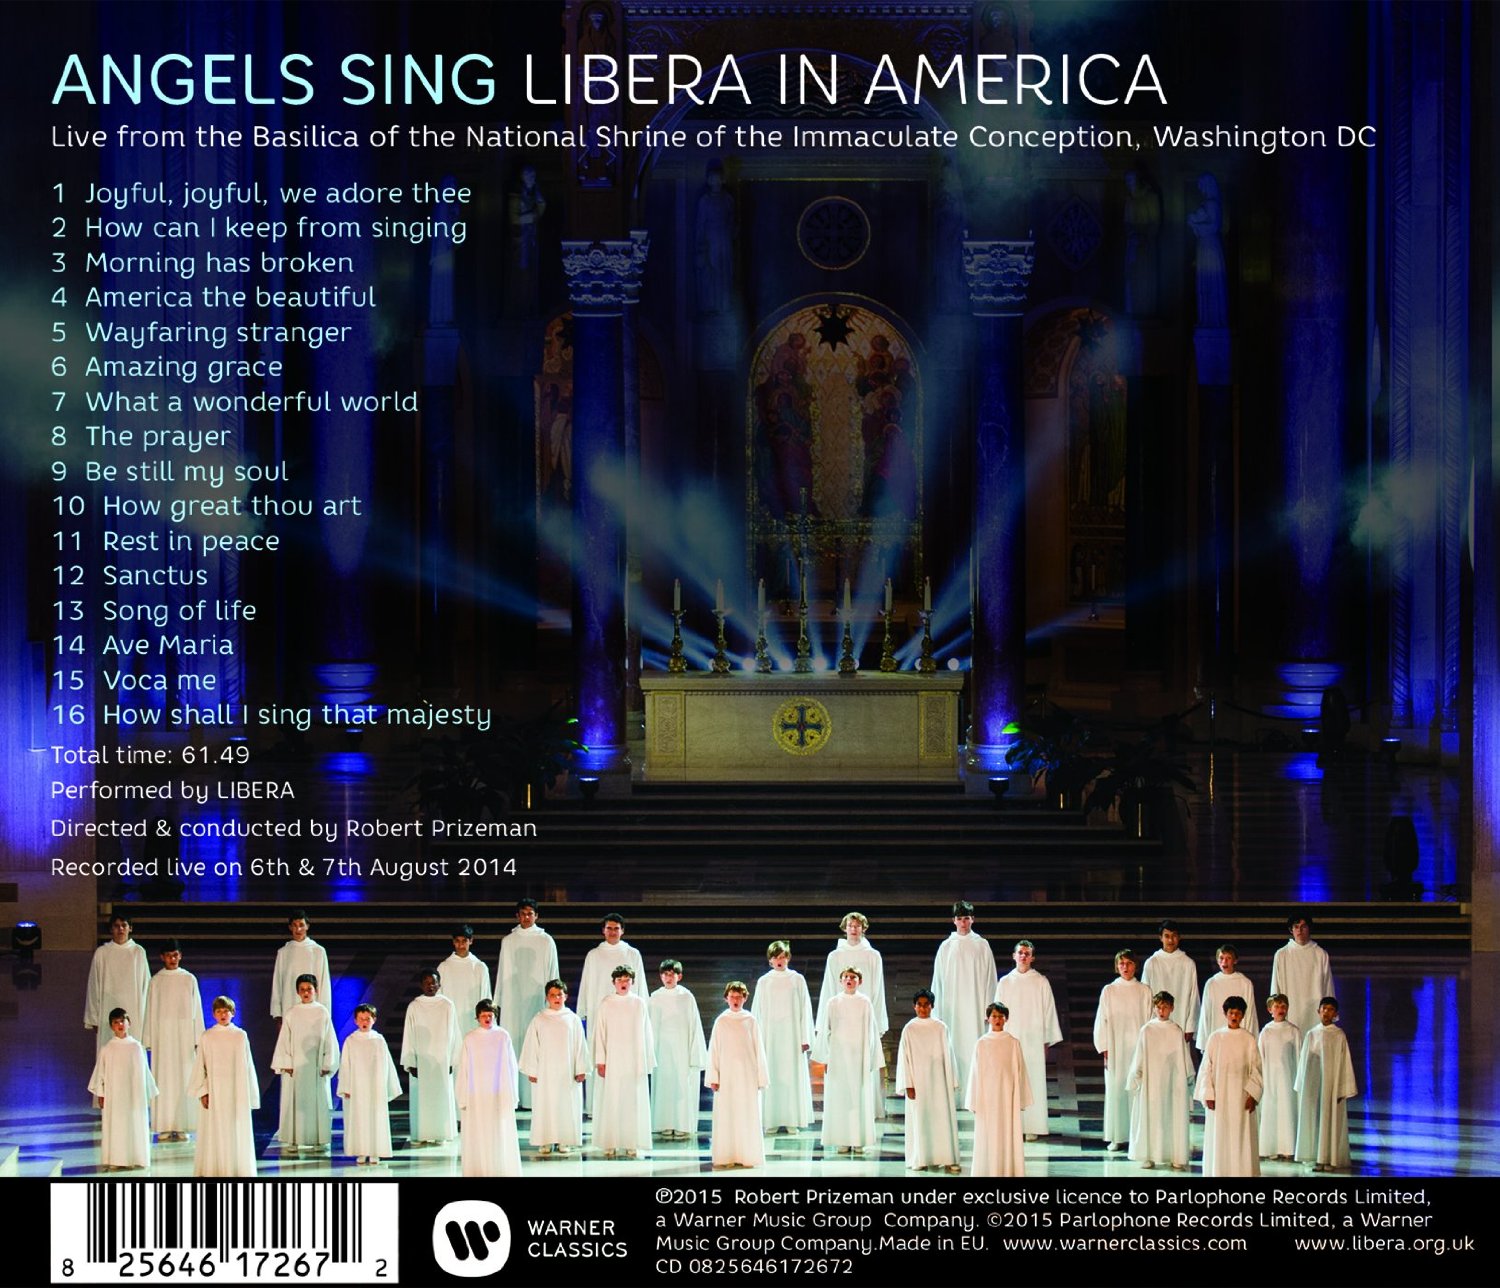  Libera as Angels Sing, Sing in America